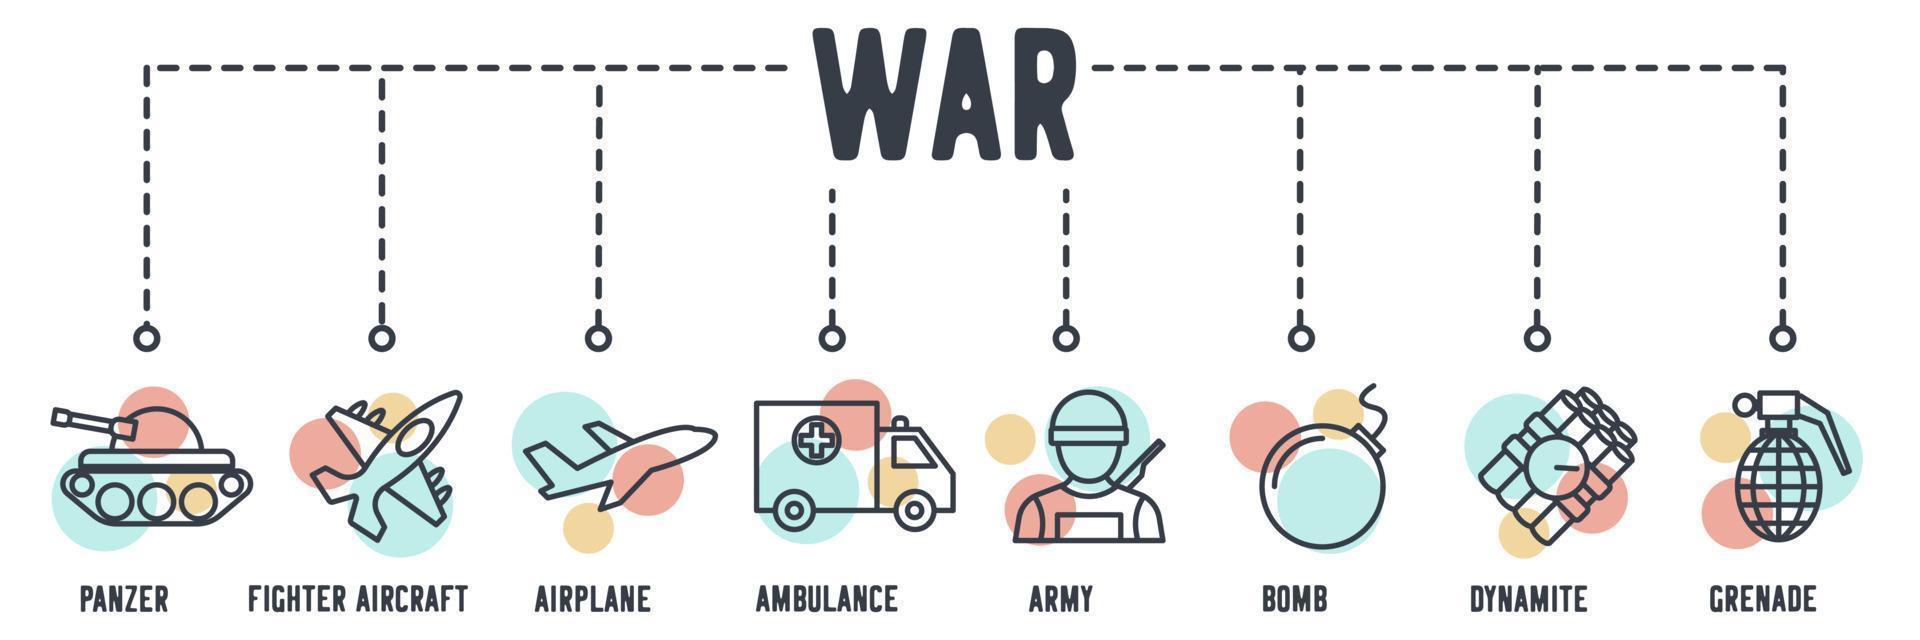 conjunto de iconos web de banner del ejército. panzer, avión de combate, avión, ambulancia, ejército, bomba, dinamita, concepto de ilustración vectorial de granadas. vector